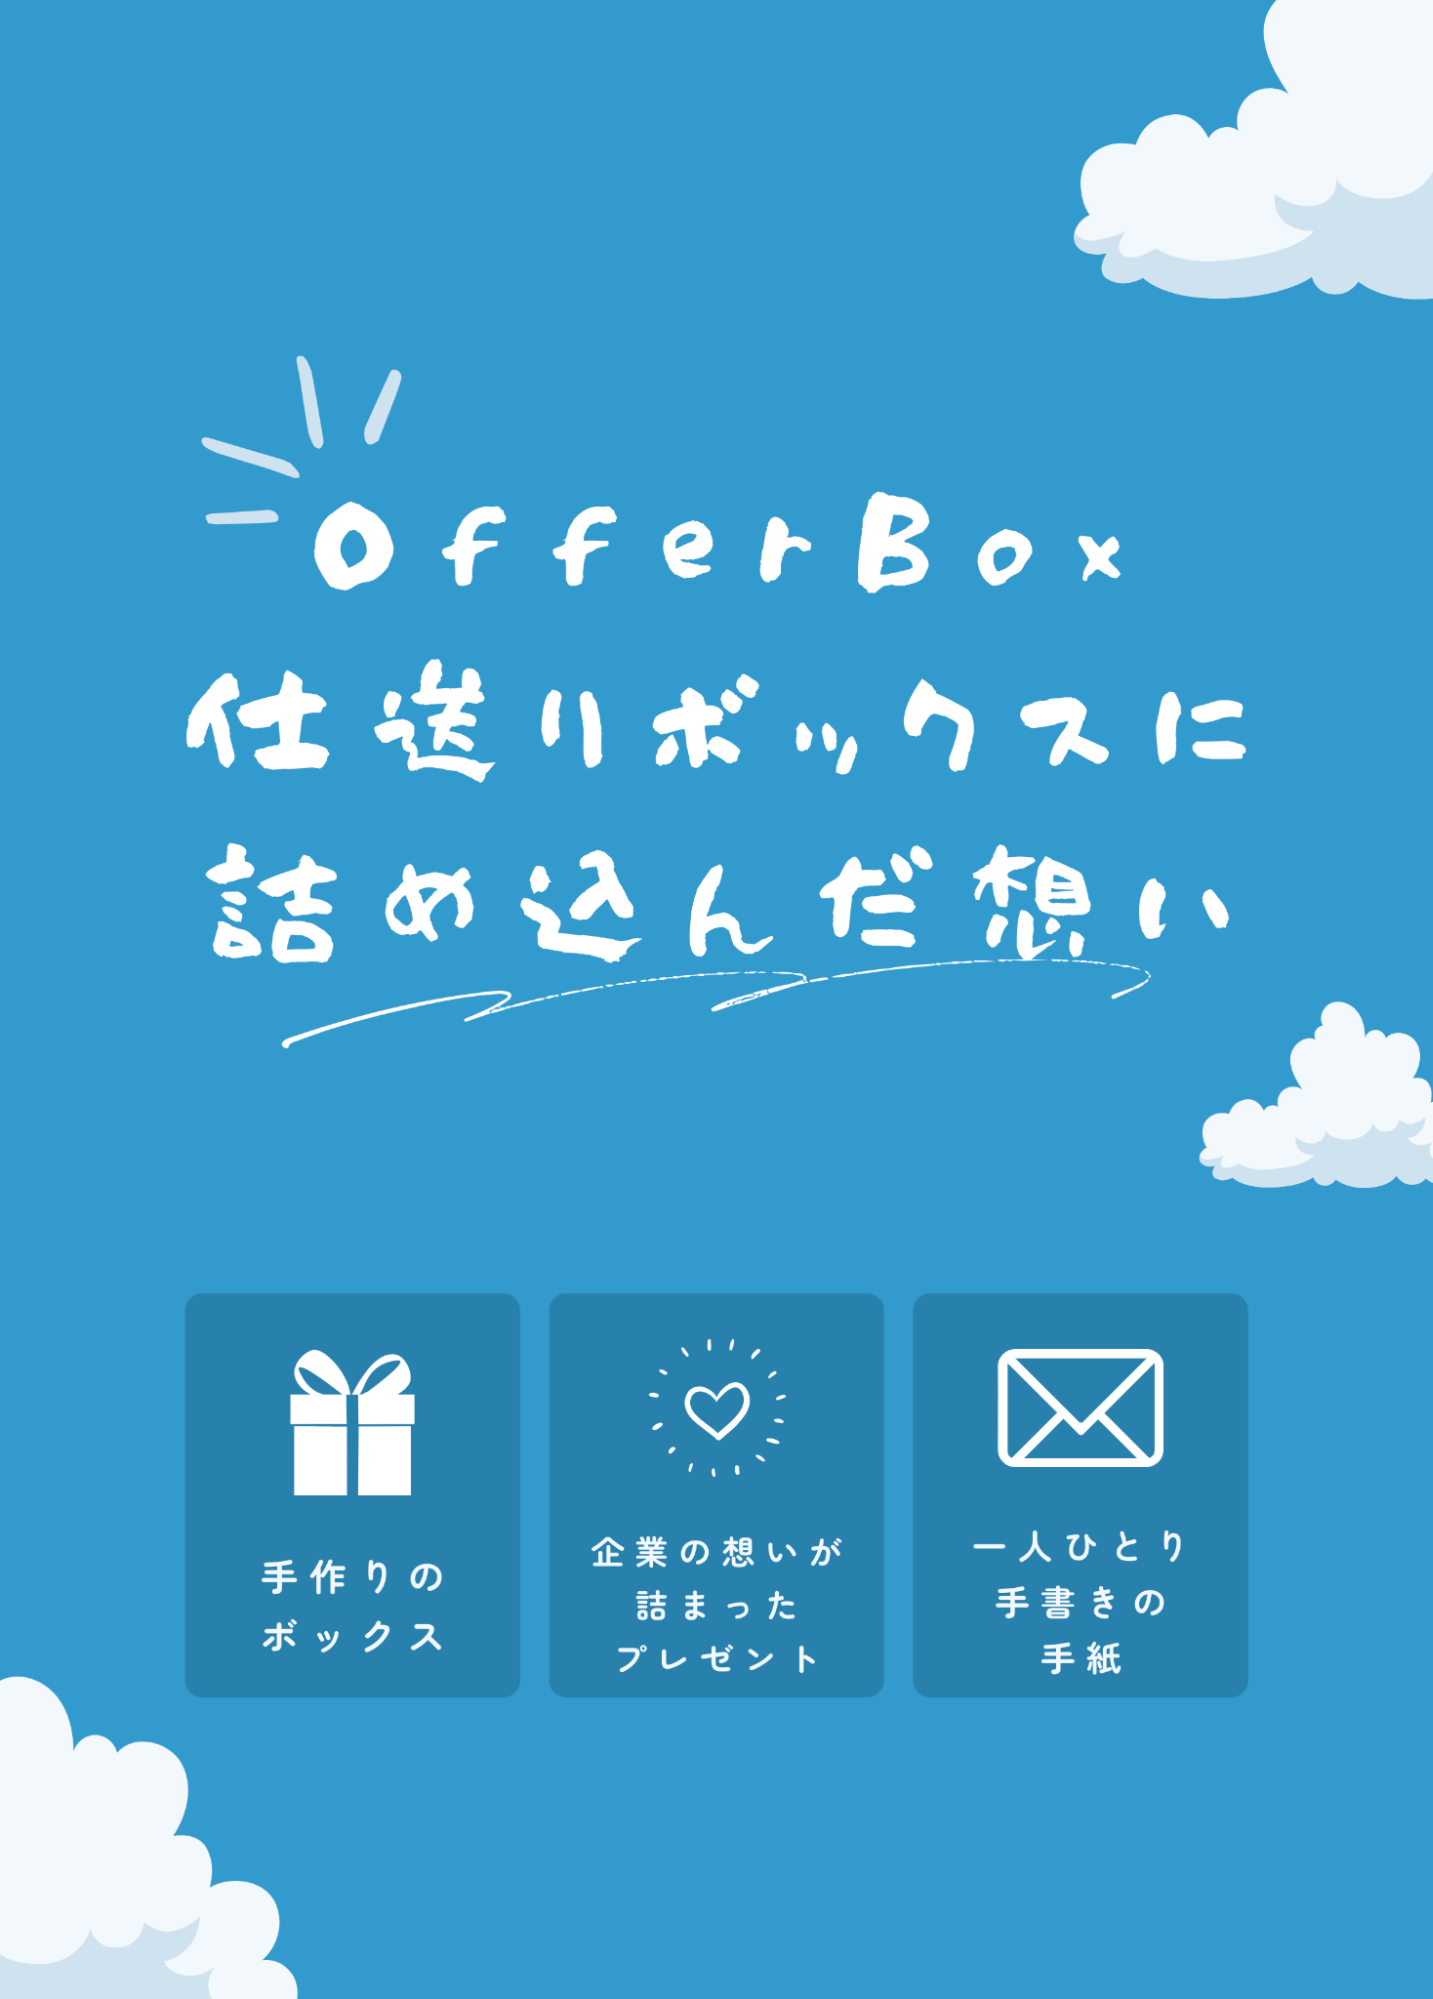 PRプロジェクト「OfferBox仕送りボックスプレゼントキャンペーン」に込めた想い